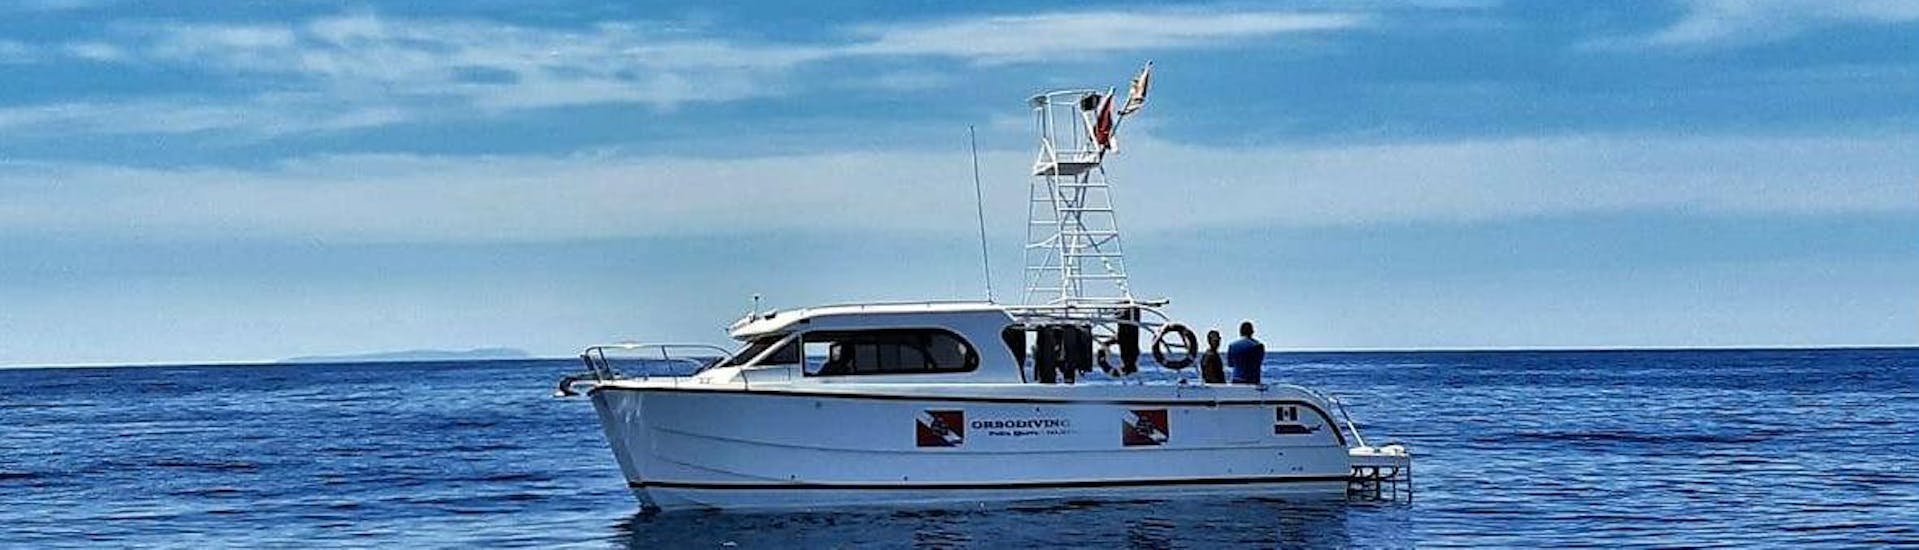 Bootstour entlang der Costa Smeralda mit Schnorchelstopps.